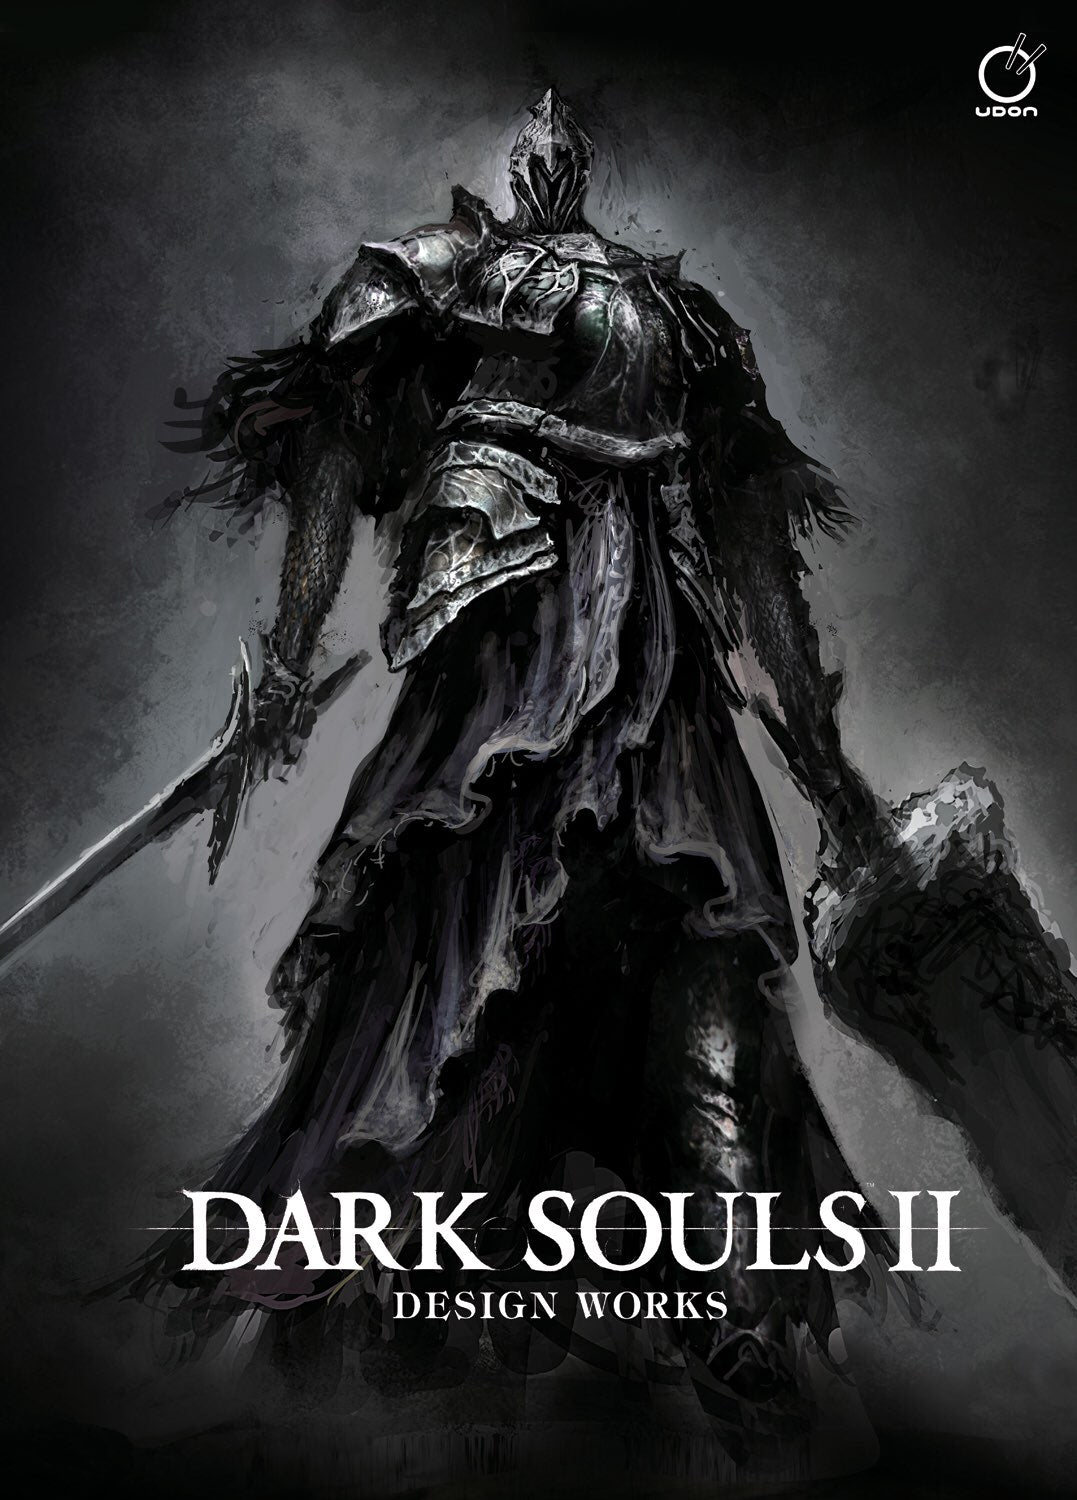 Resumo da semana: Dark Souls 2 e lançamentos foram os destaques